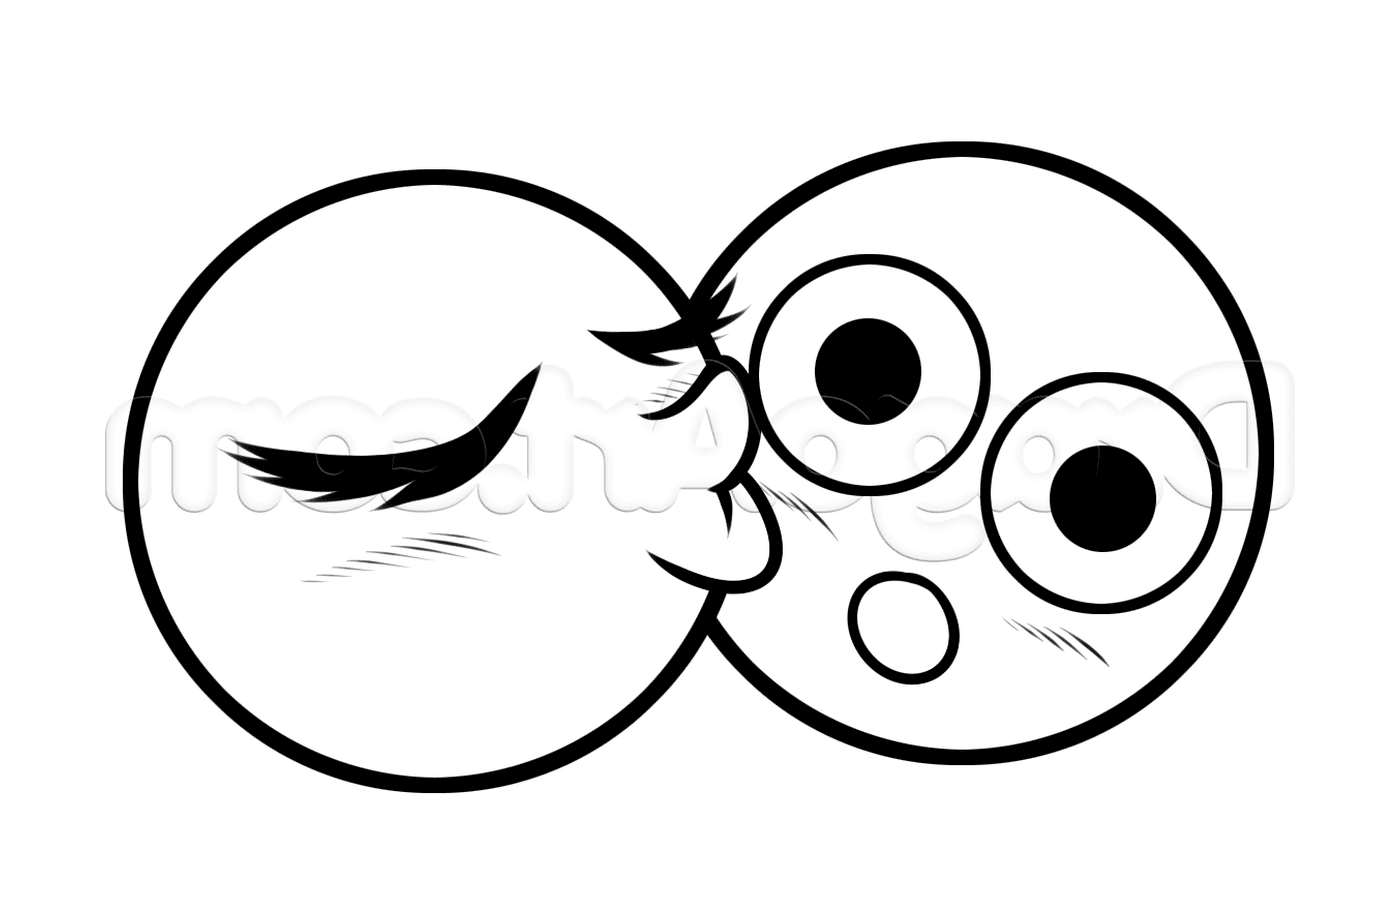  दो आंखों के साथ कार्टून का चेहरा 